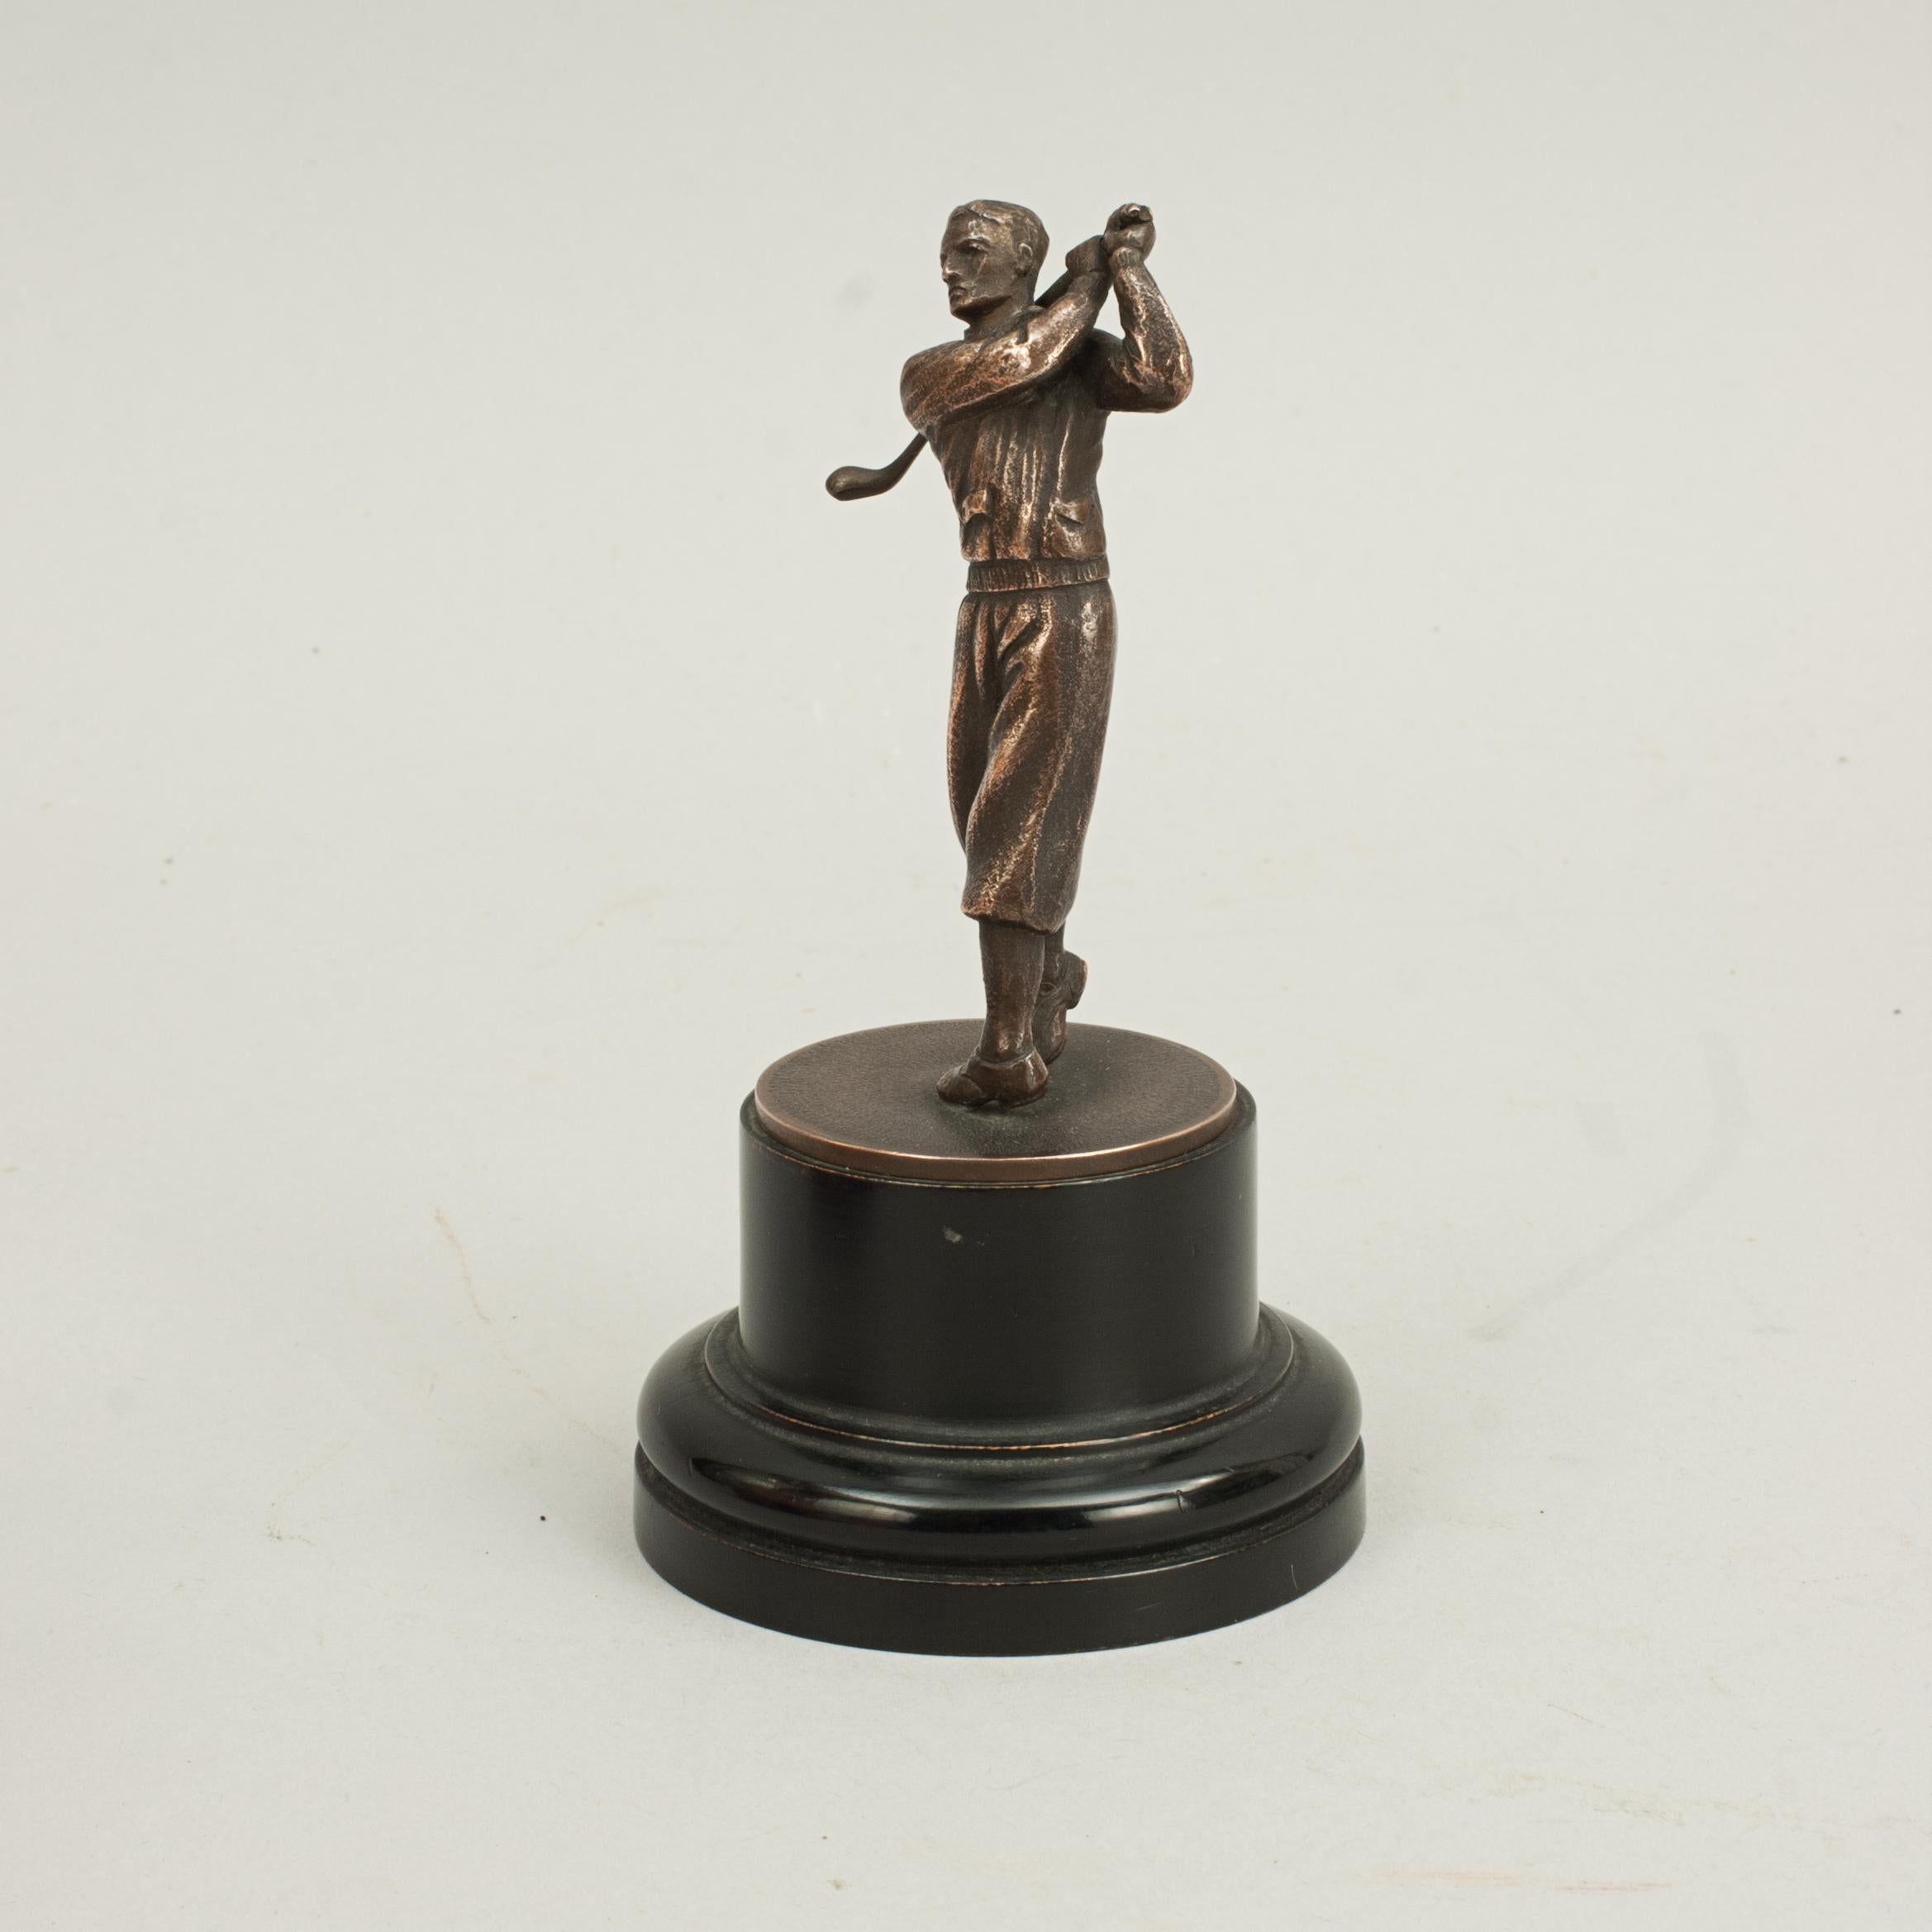 British Vintage Golf Figure For Sale